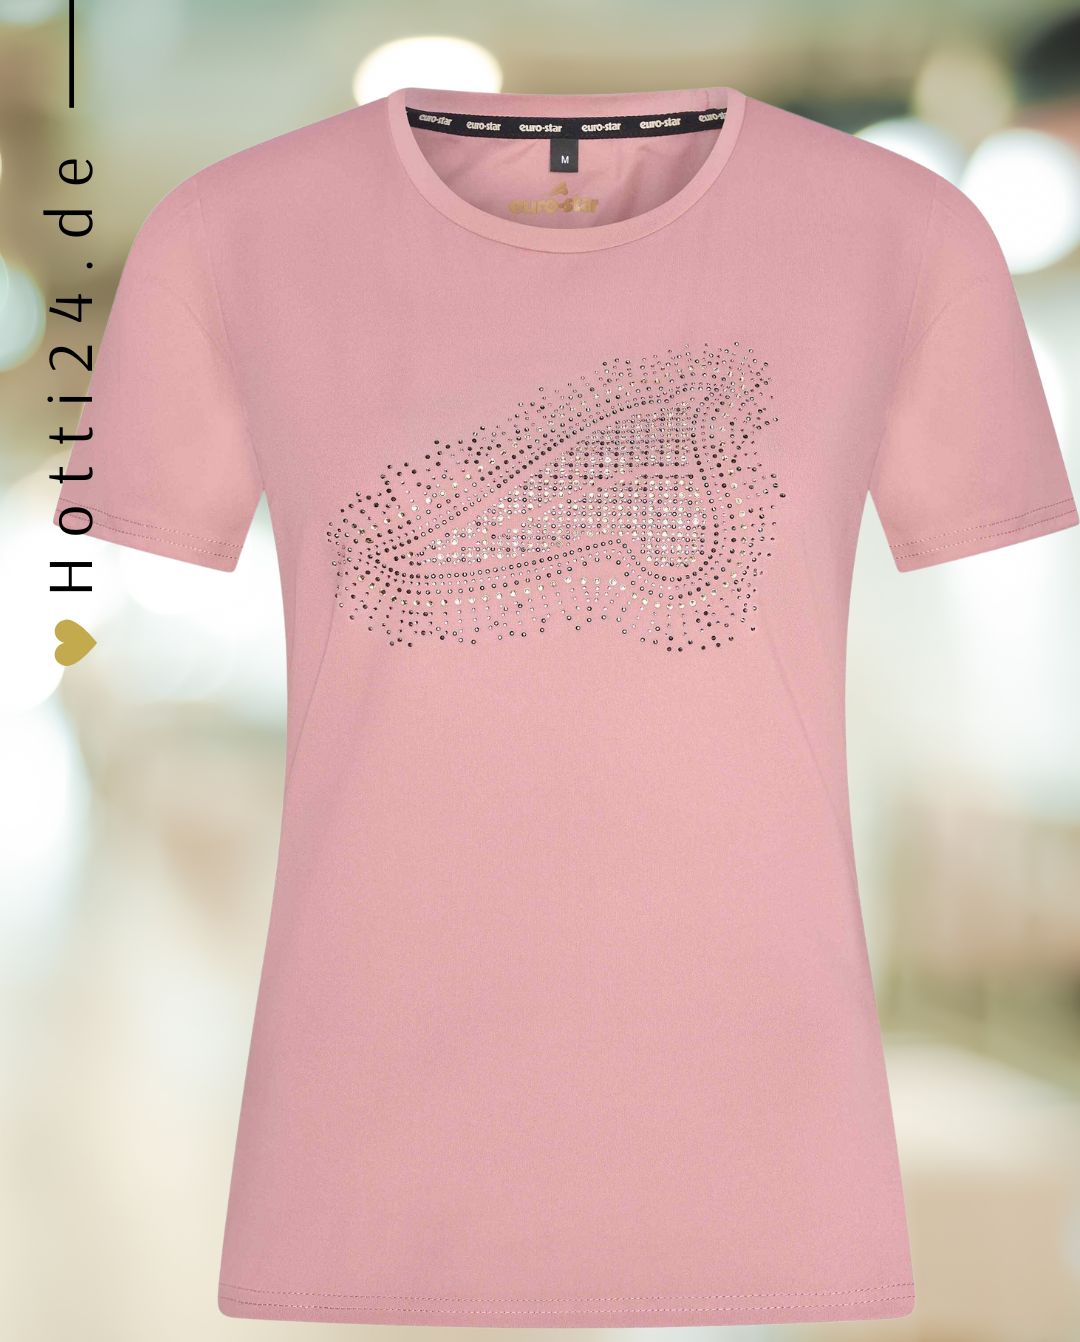 Euro Star »Damen T-Shirt ESMirella Rosa, hat eine normale Passform und kurze Arme. Das T-Shirt hat einen tollen großen Strass-Druck. Damit ziehen Sie den Blick auf sich Artikelnummer 9422-1009-3168 erhältlich bei www.Hotti24.de